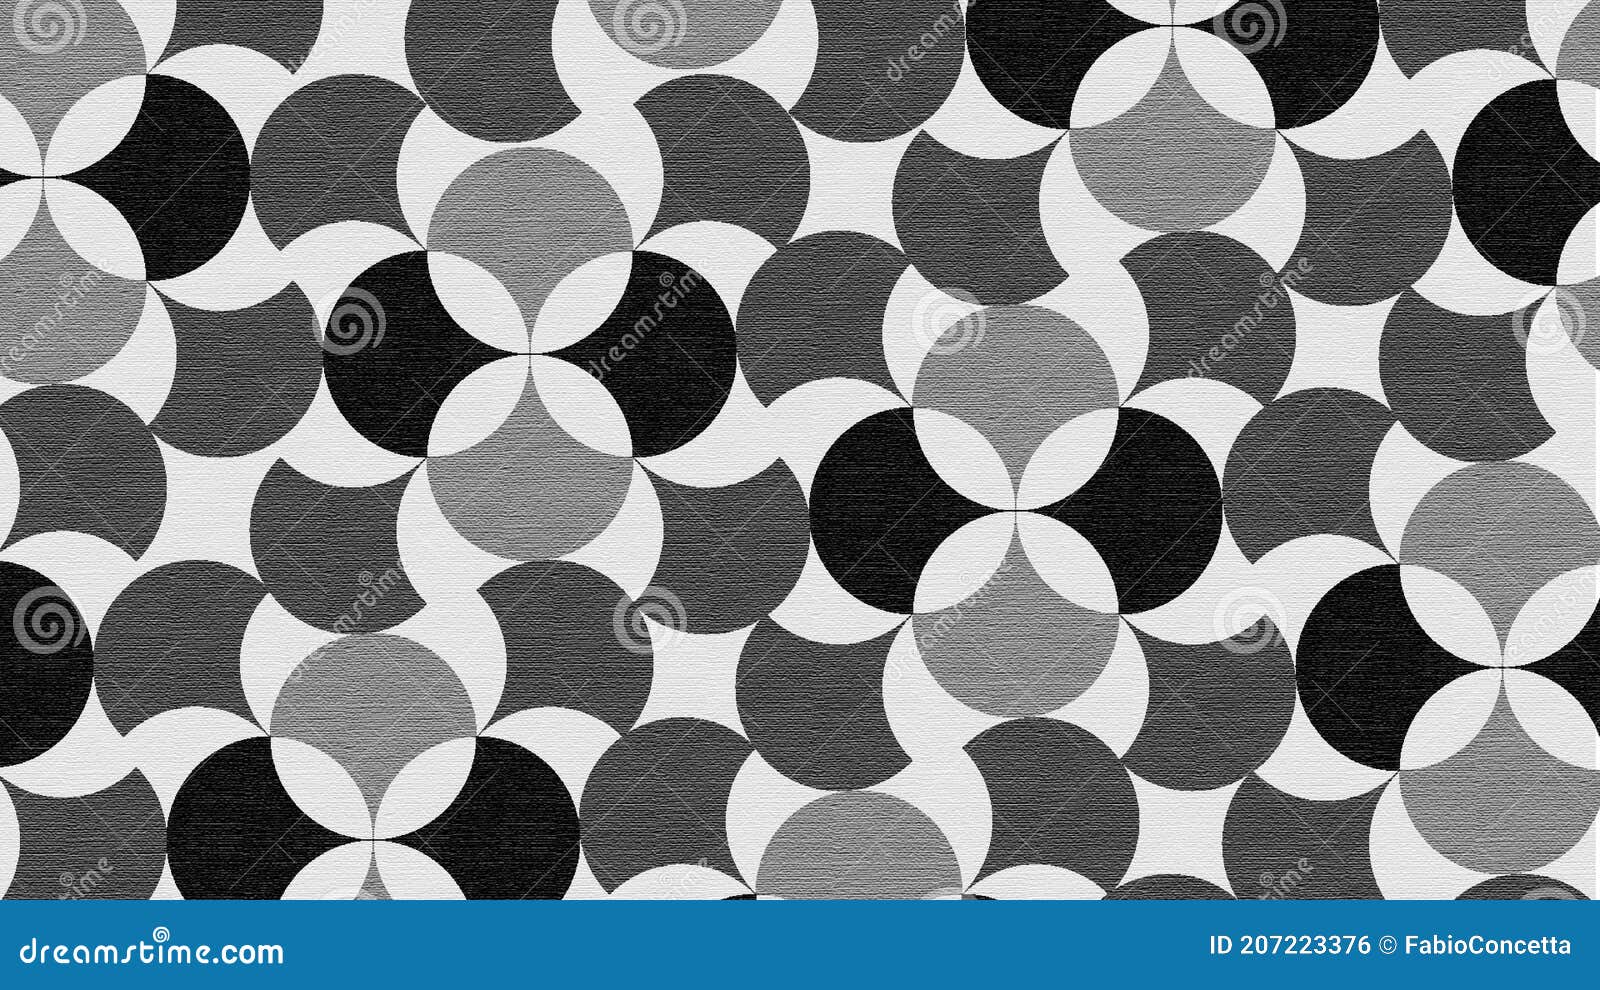 sfondo astratto pattern di forme geometriche in scala di grigio con texture